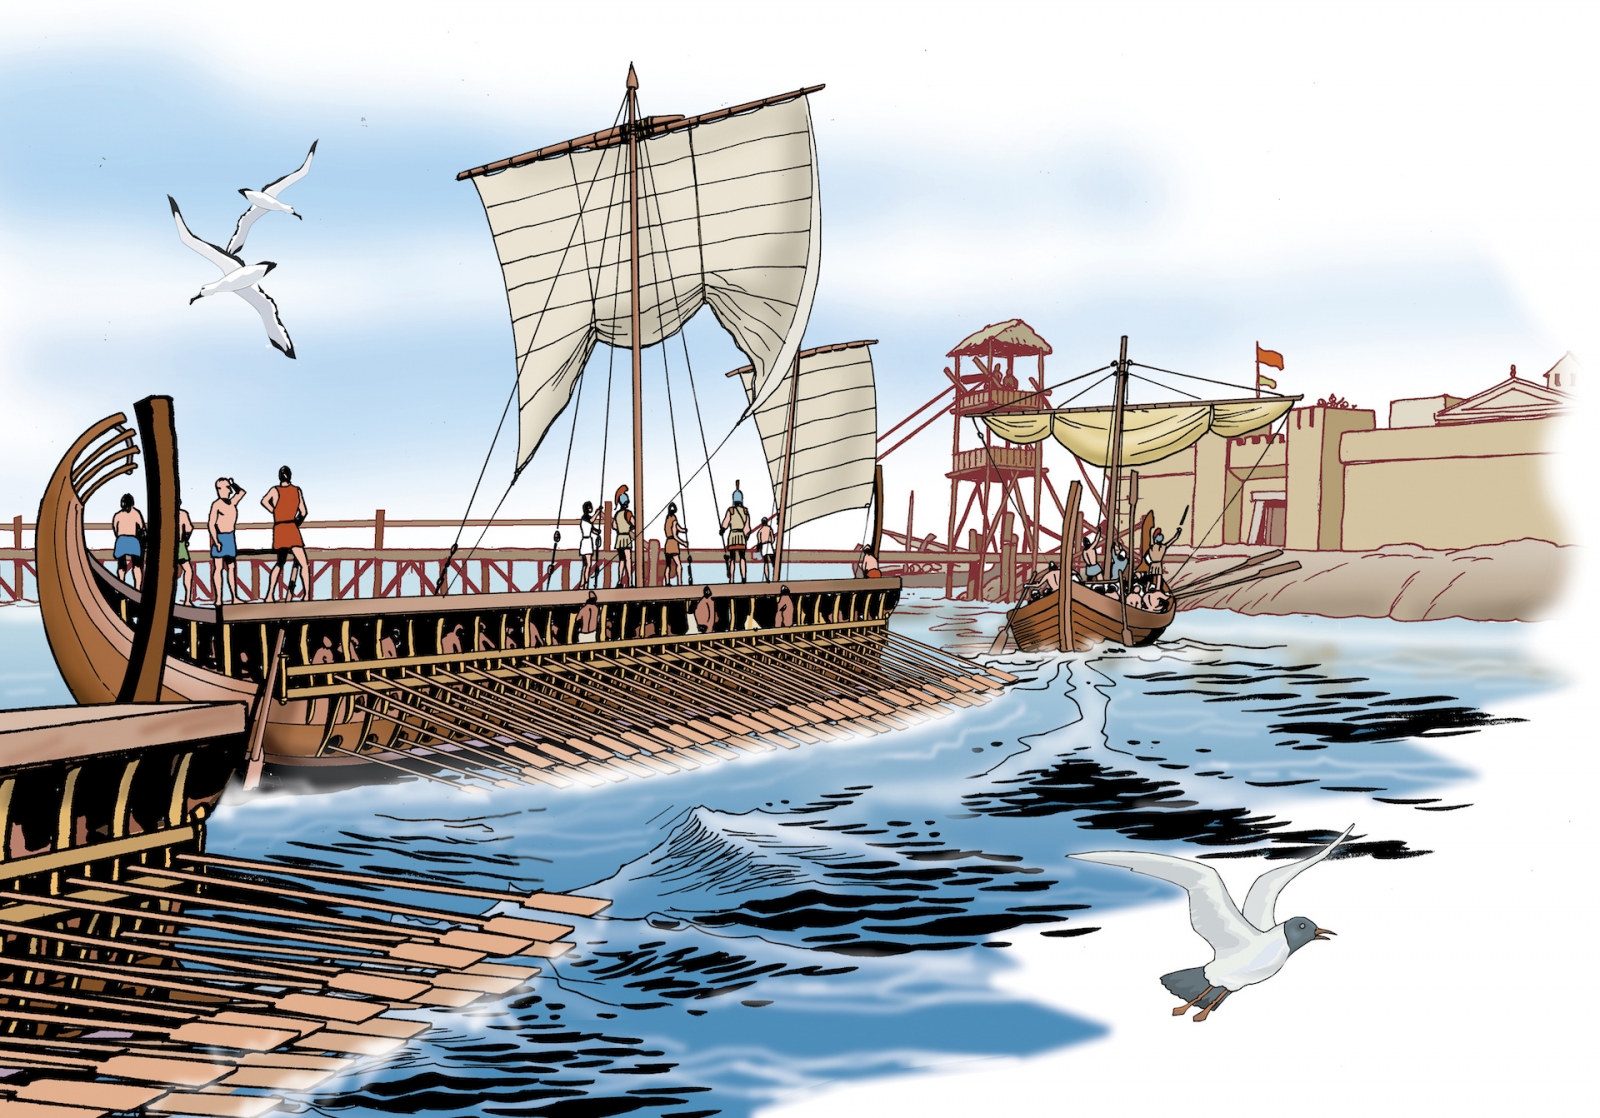 Ancient Greece - Greek warships arrive in port